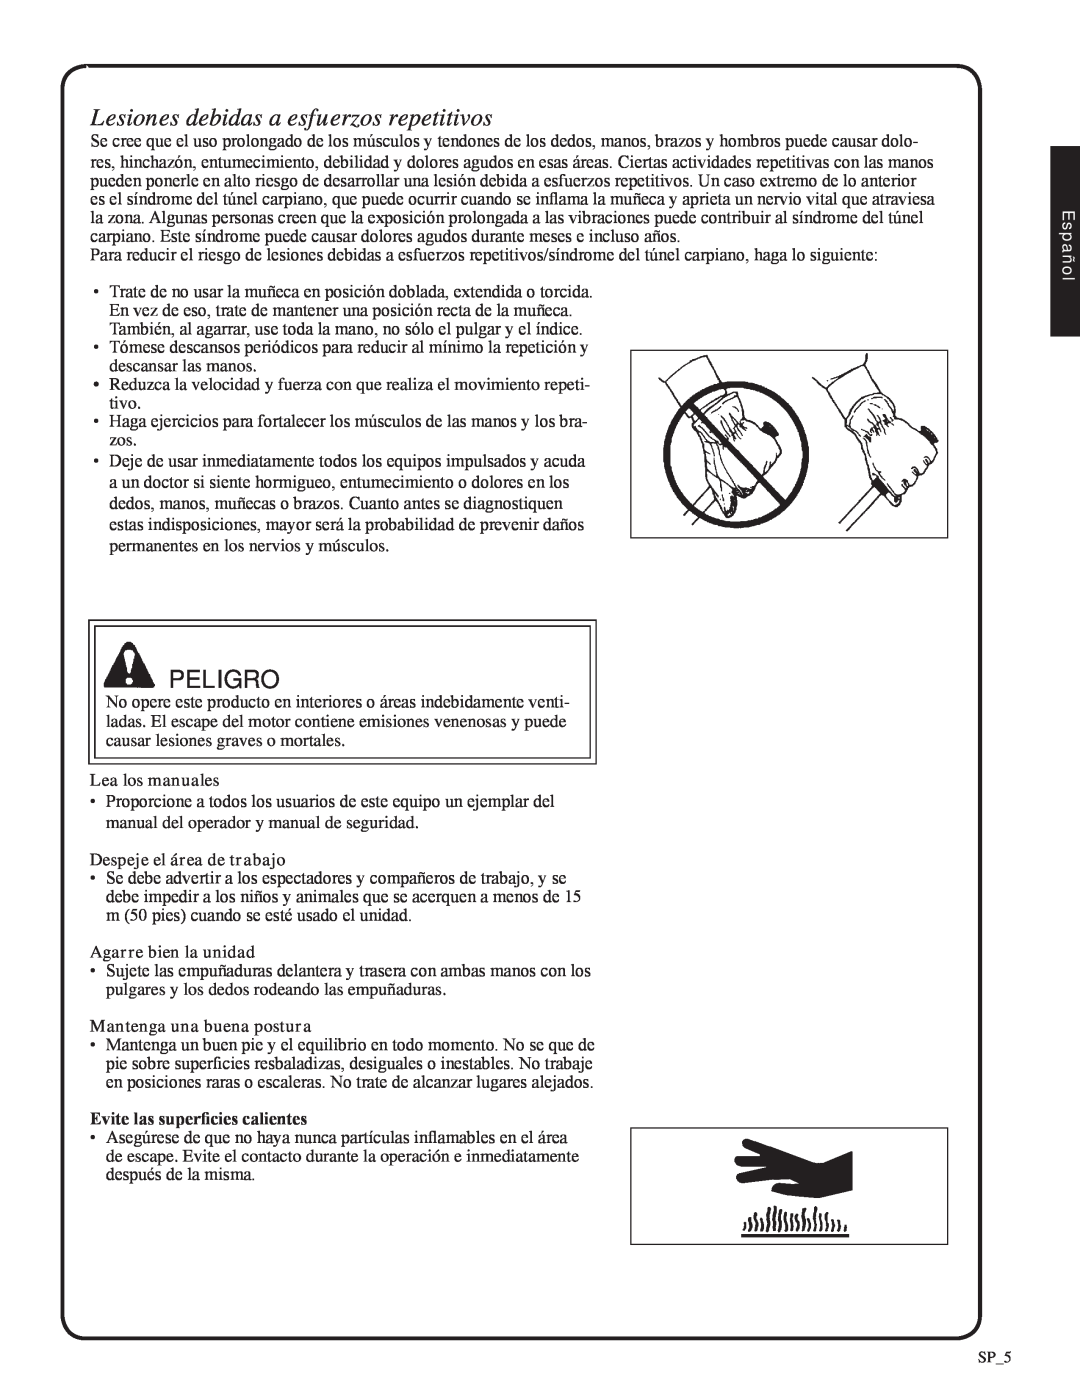 Shindaiwa 82051, EB212 manual Lesiones debidas a esfuerzos repetitivos, Peligro, Español 